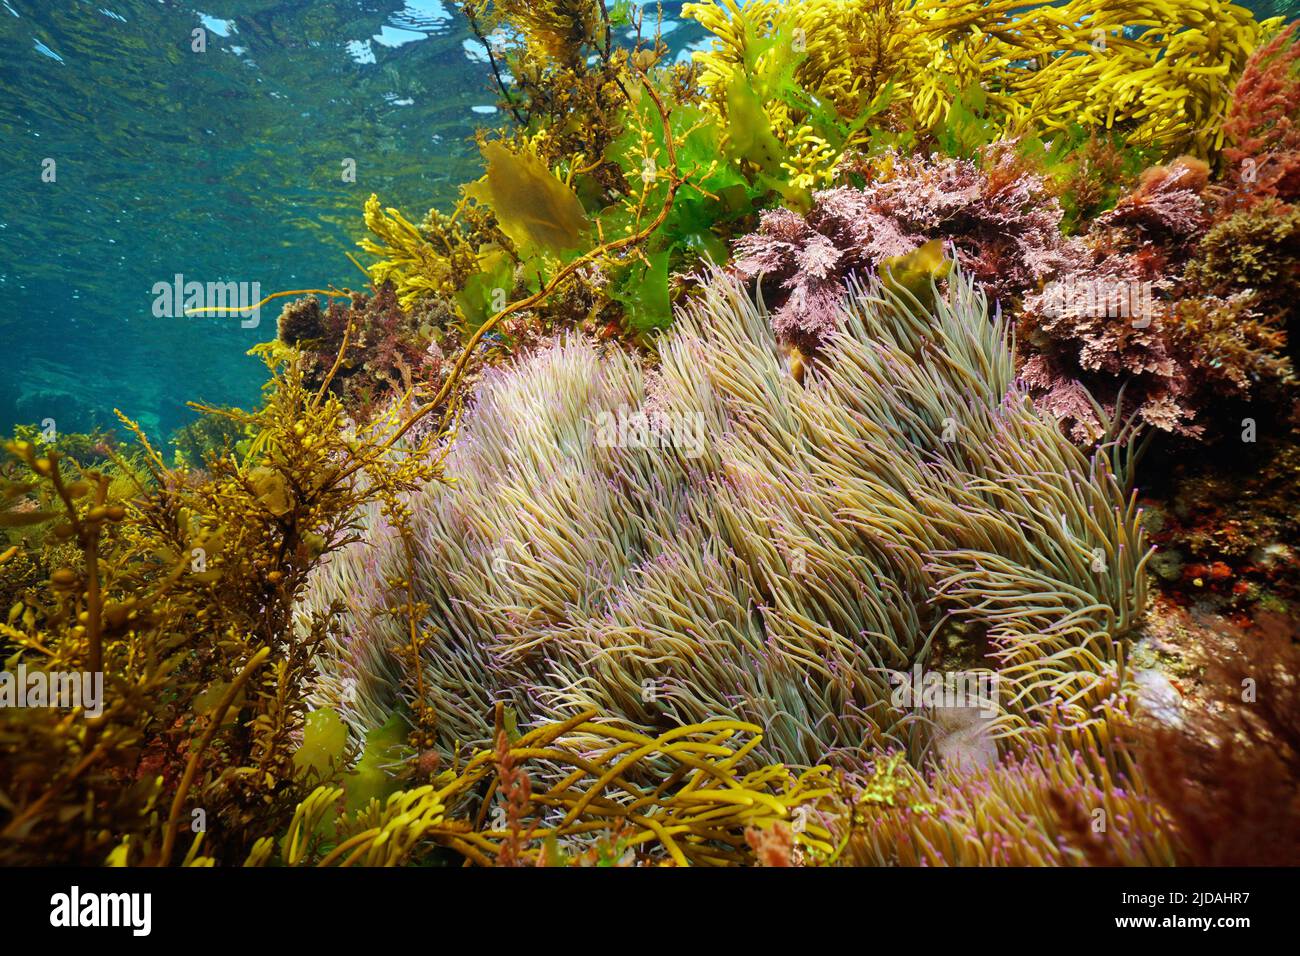 Schlangenschnecke Seeanemonen im Ozean, Anemonia viridis, mit verschiedenen Algen unter Wasser, Ostatlantik, Spanien, Galizien Stockfoto